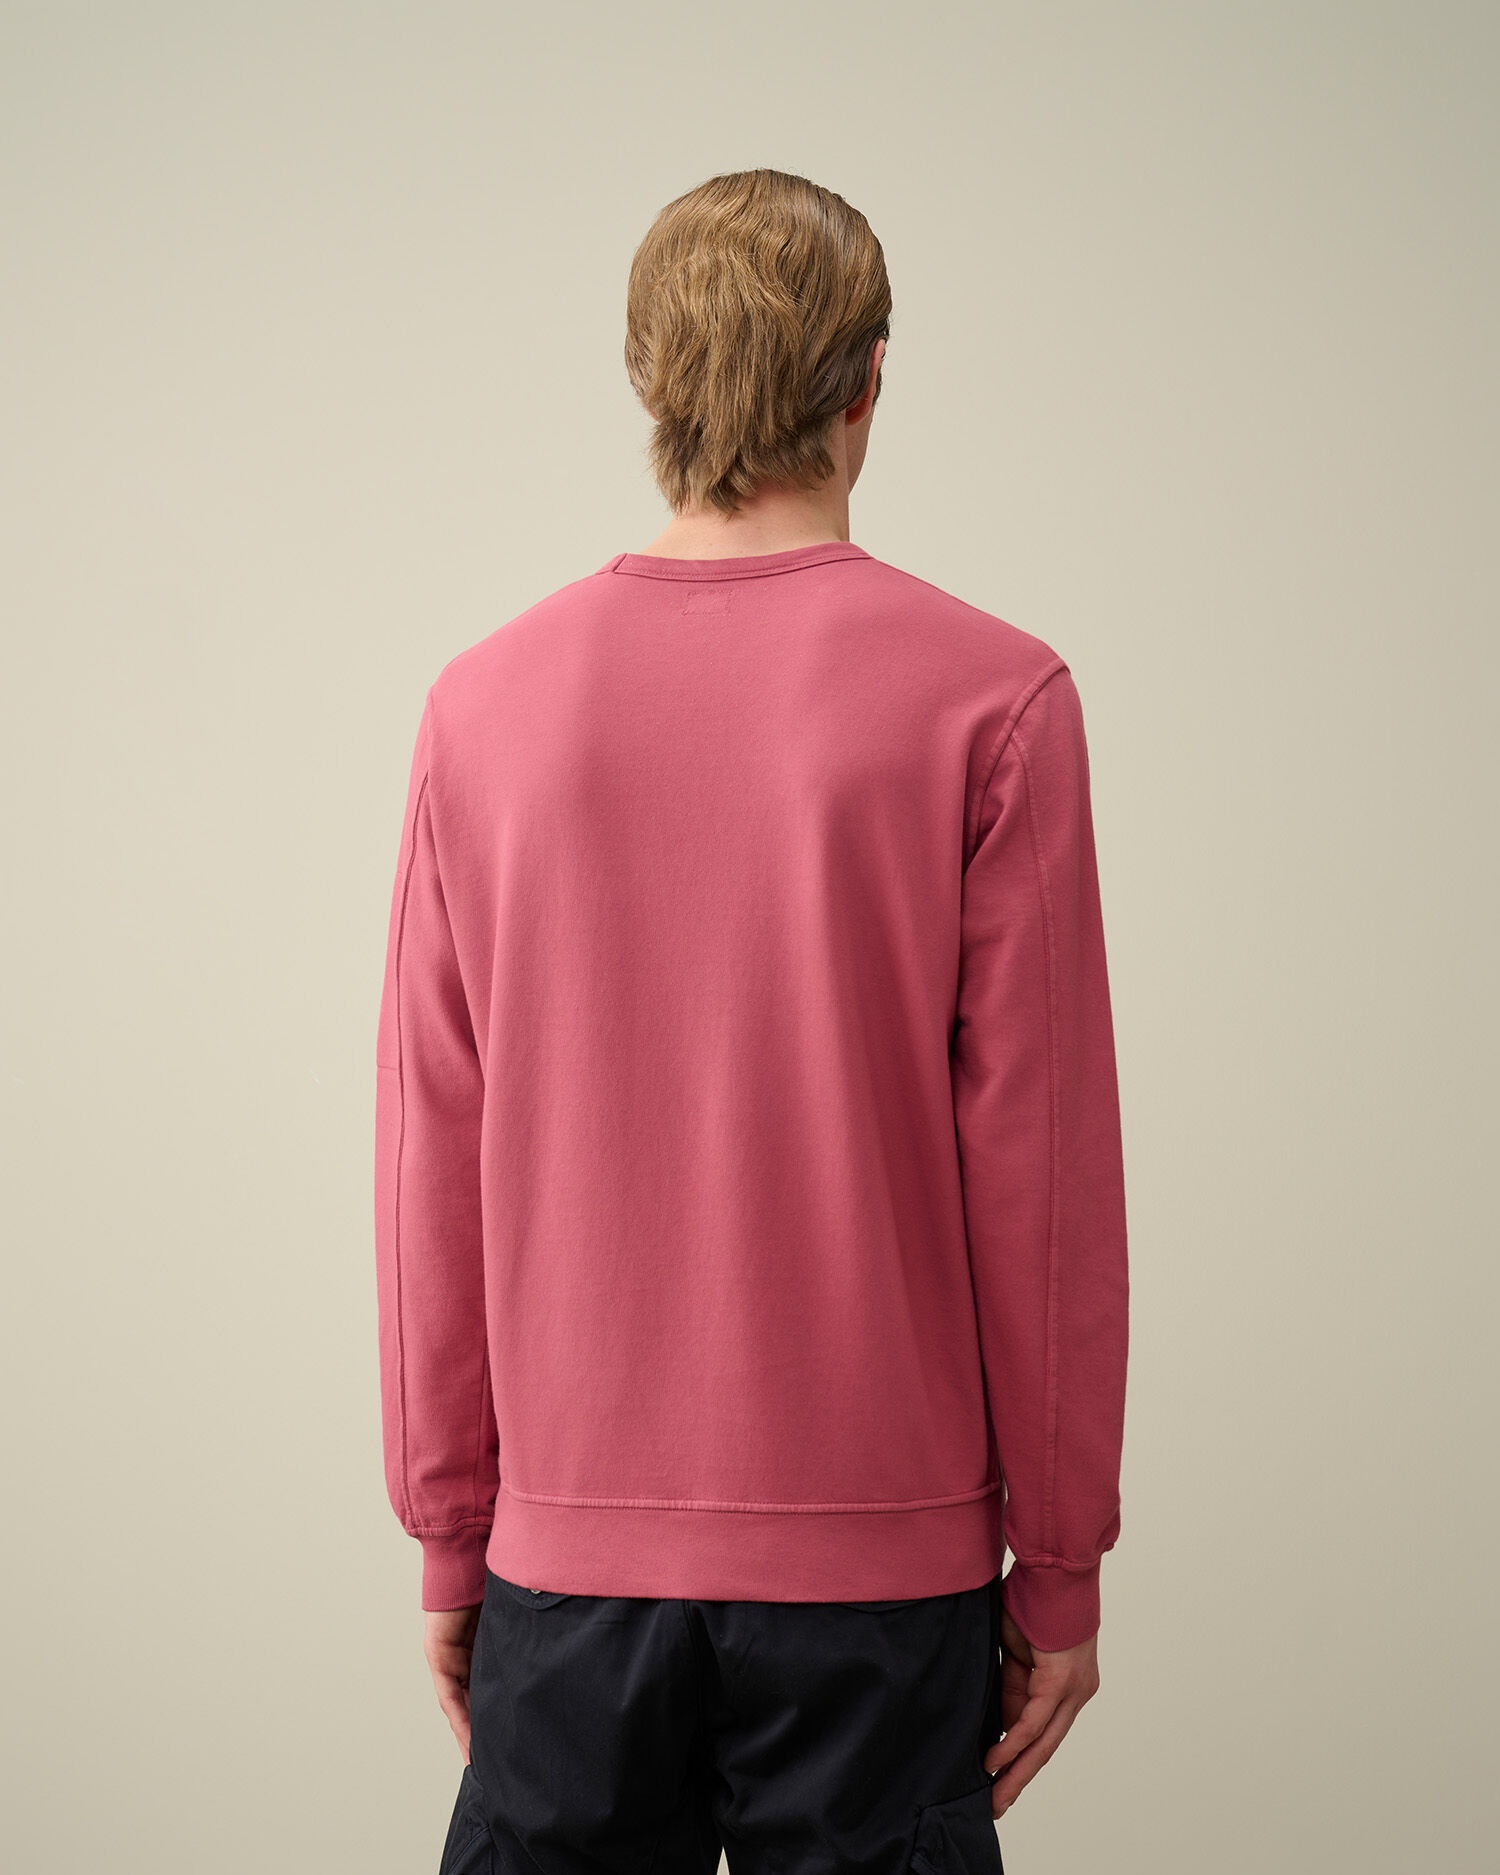 Light Fleece Sweatshirt - 3